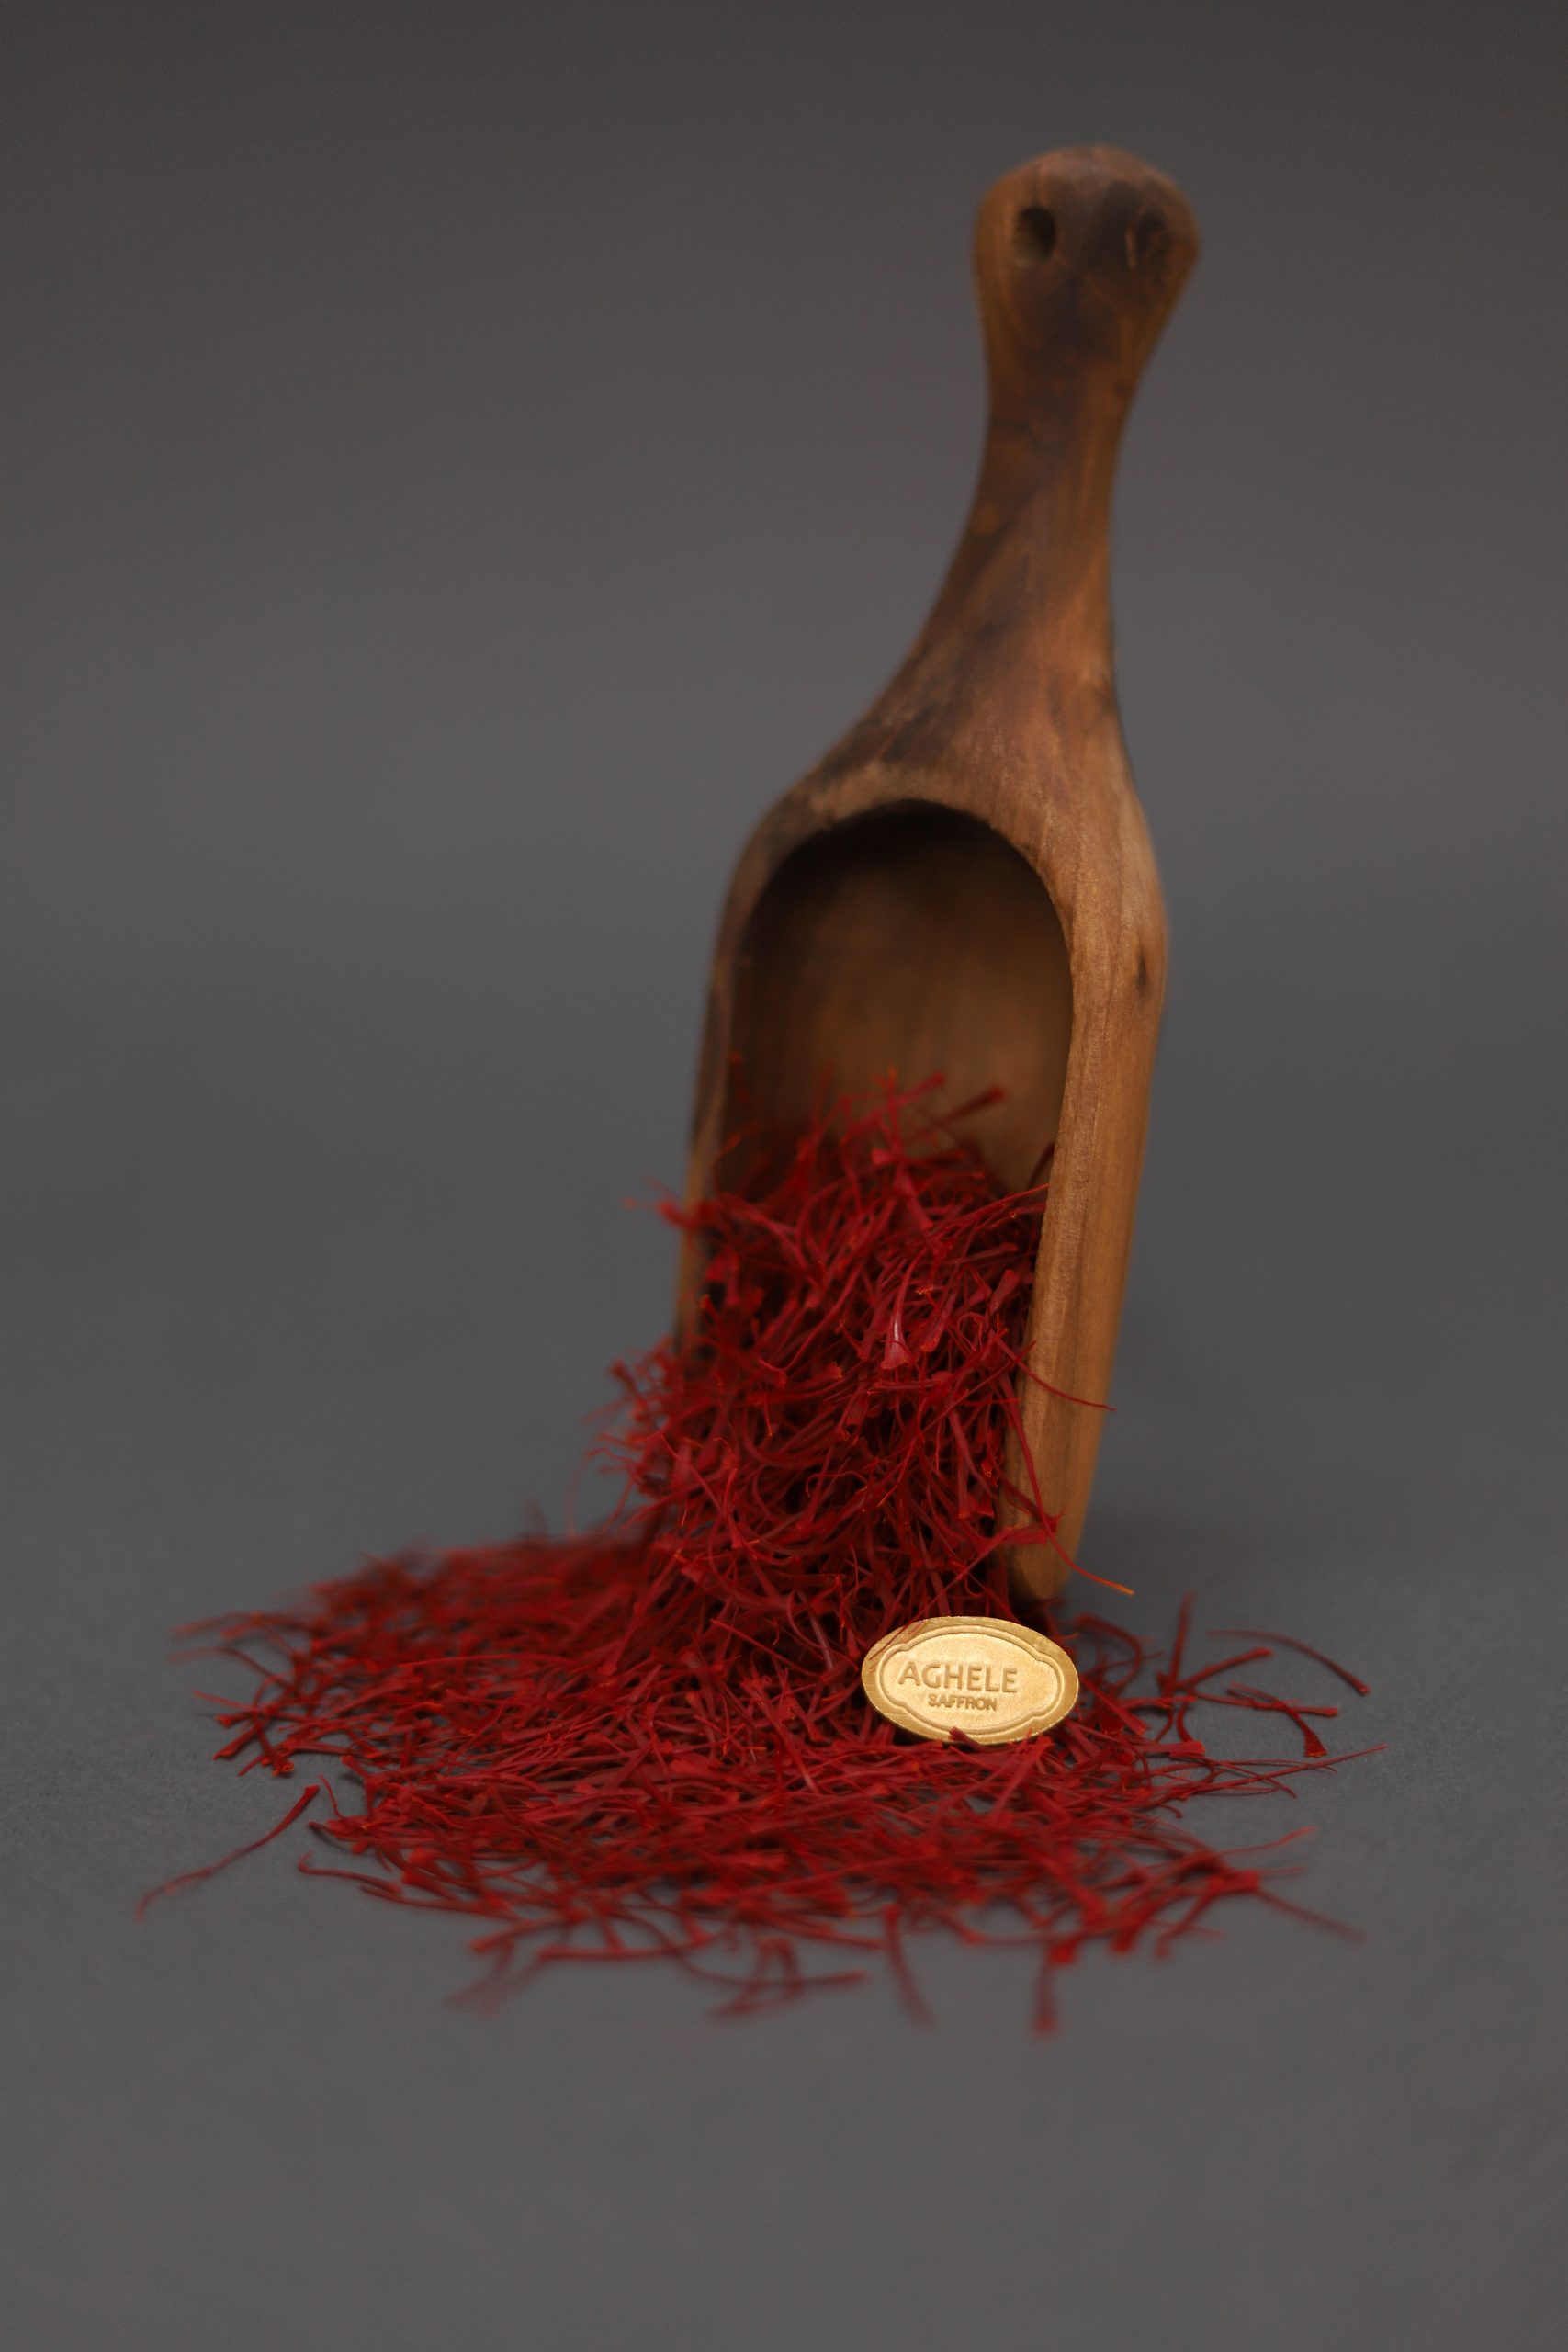 خرید زعفران نگین عاقله. زعفران که در حال ریختن از قاشق چوبی است